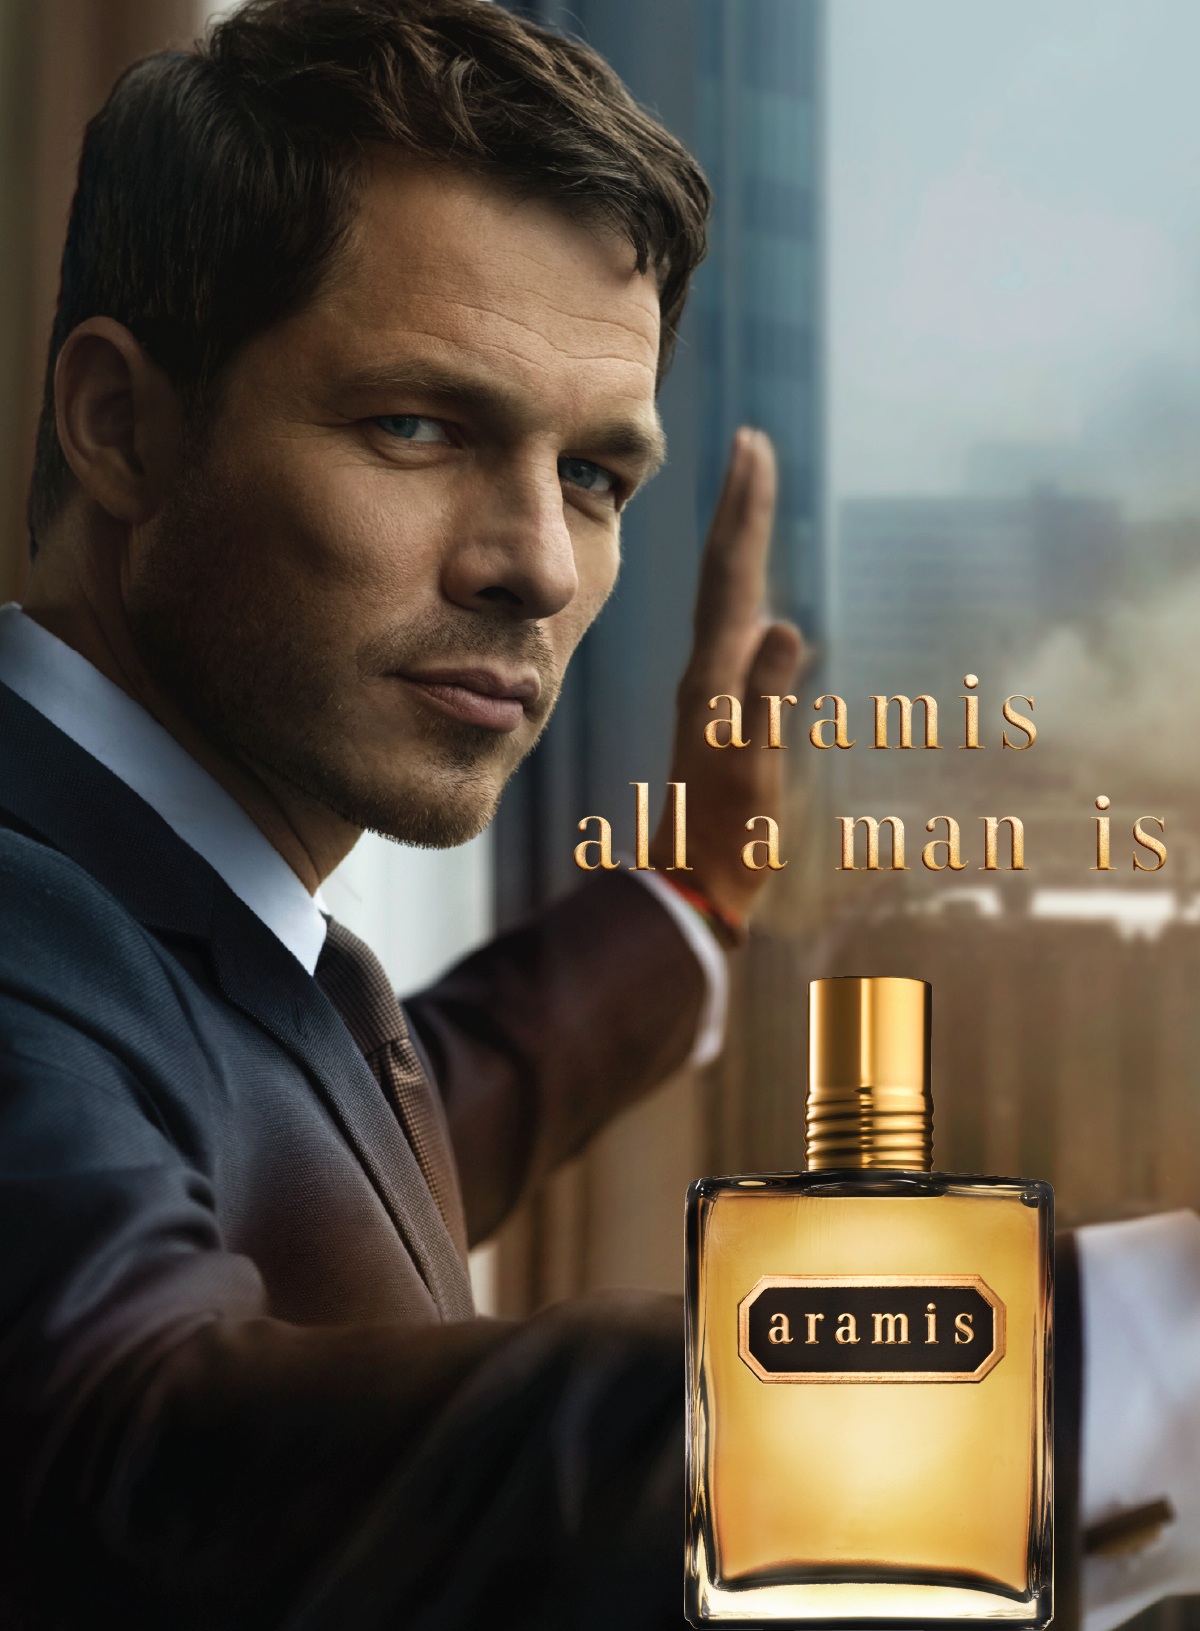 44 Cool Aramis and designer fragrances estee lauder companies for New Design